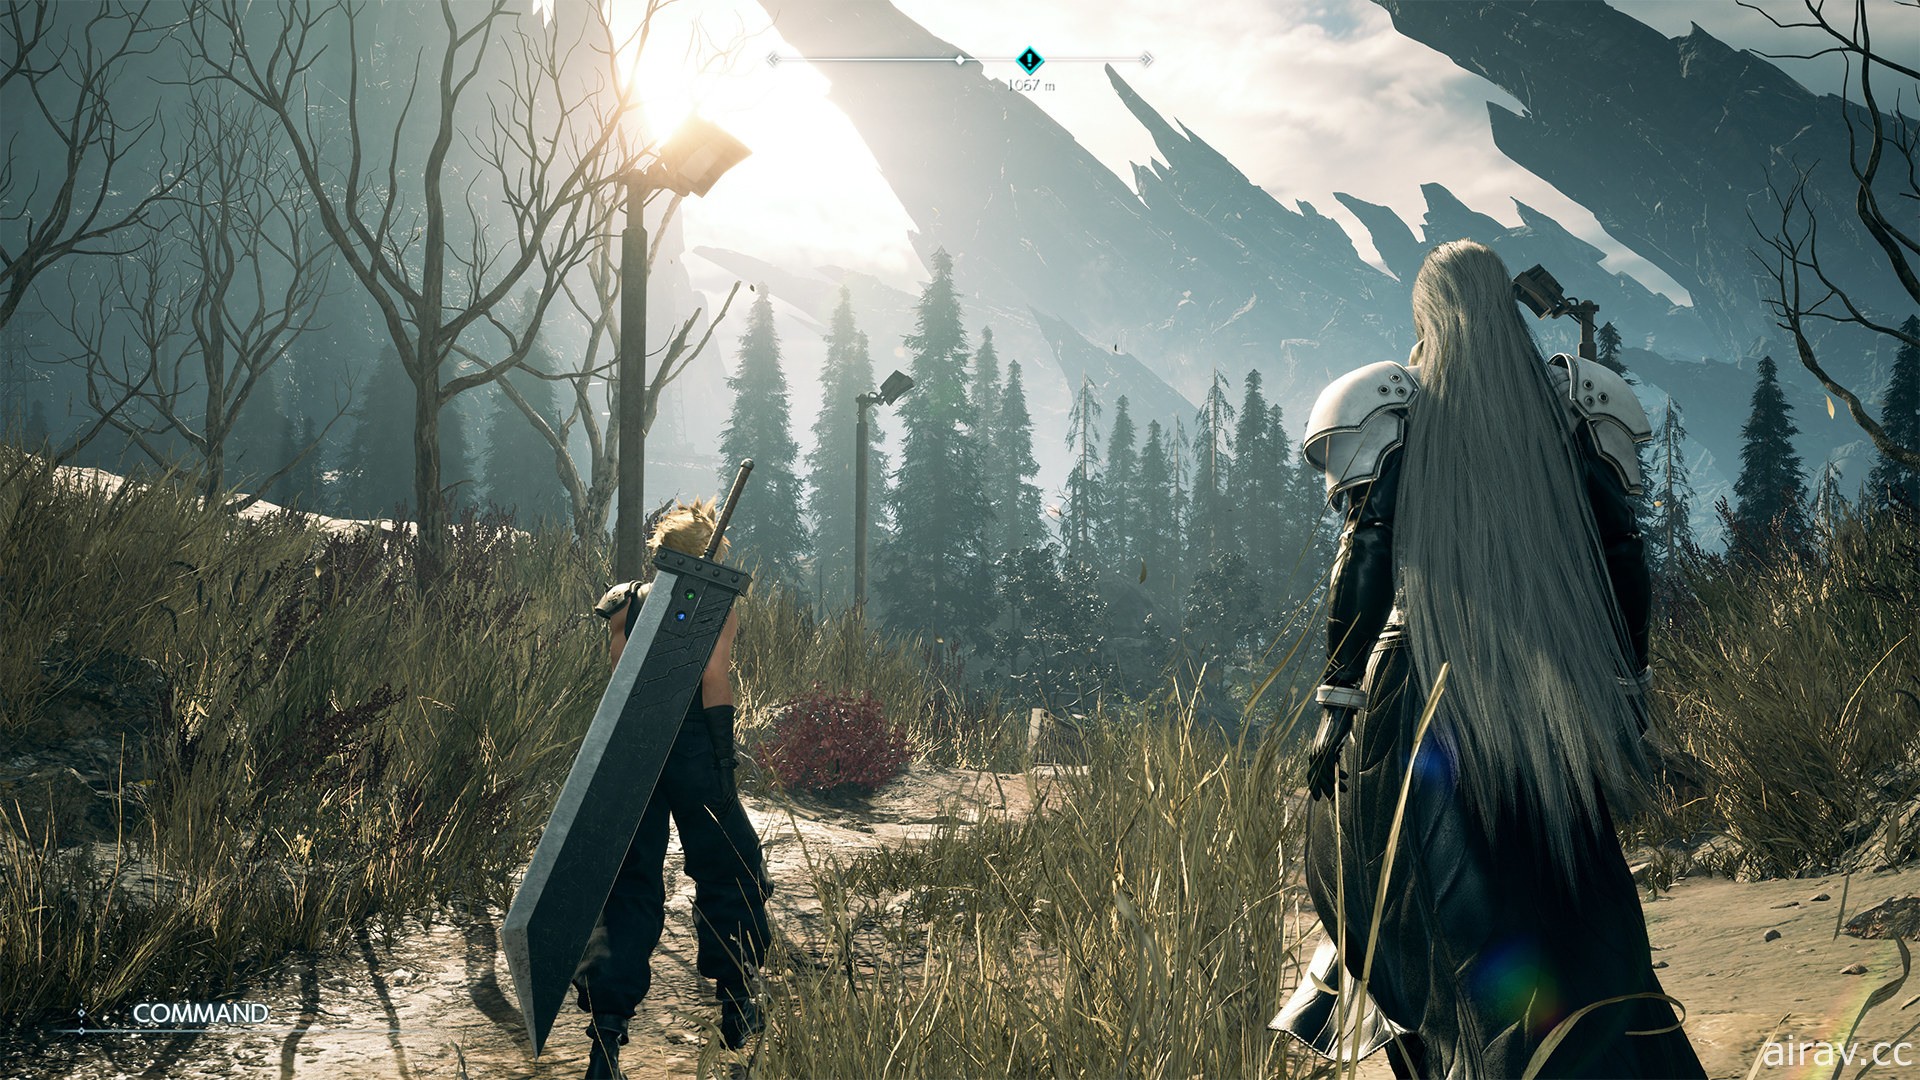 《Final Fantasy VII》重製二部曲《重生 Rebirth》正式發表 確認將採三部曲完結形式推出